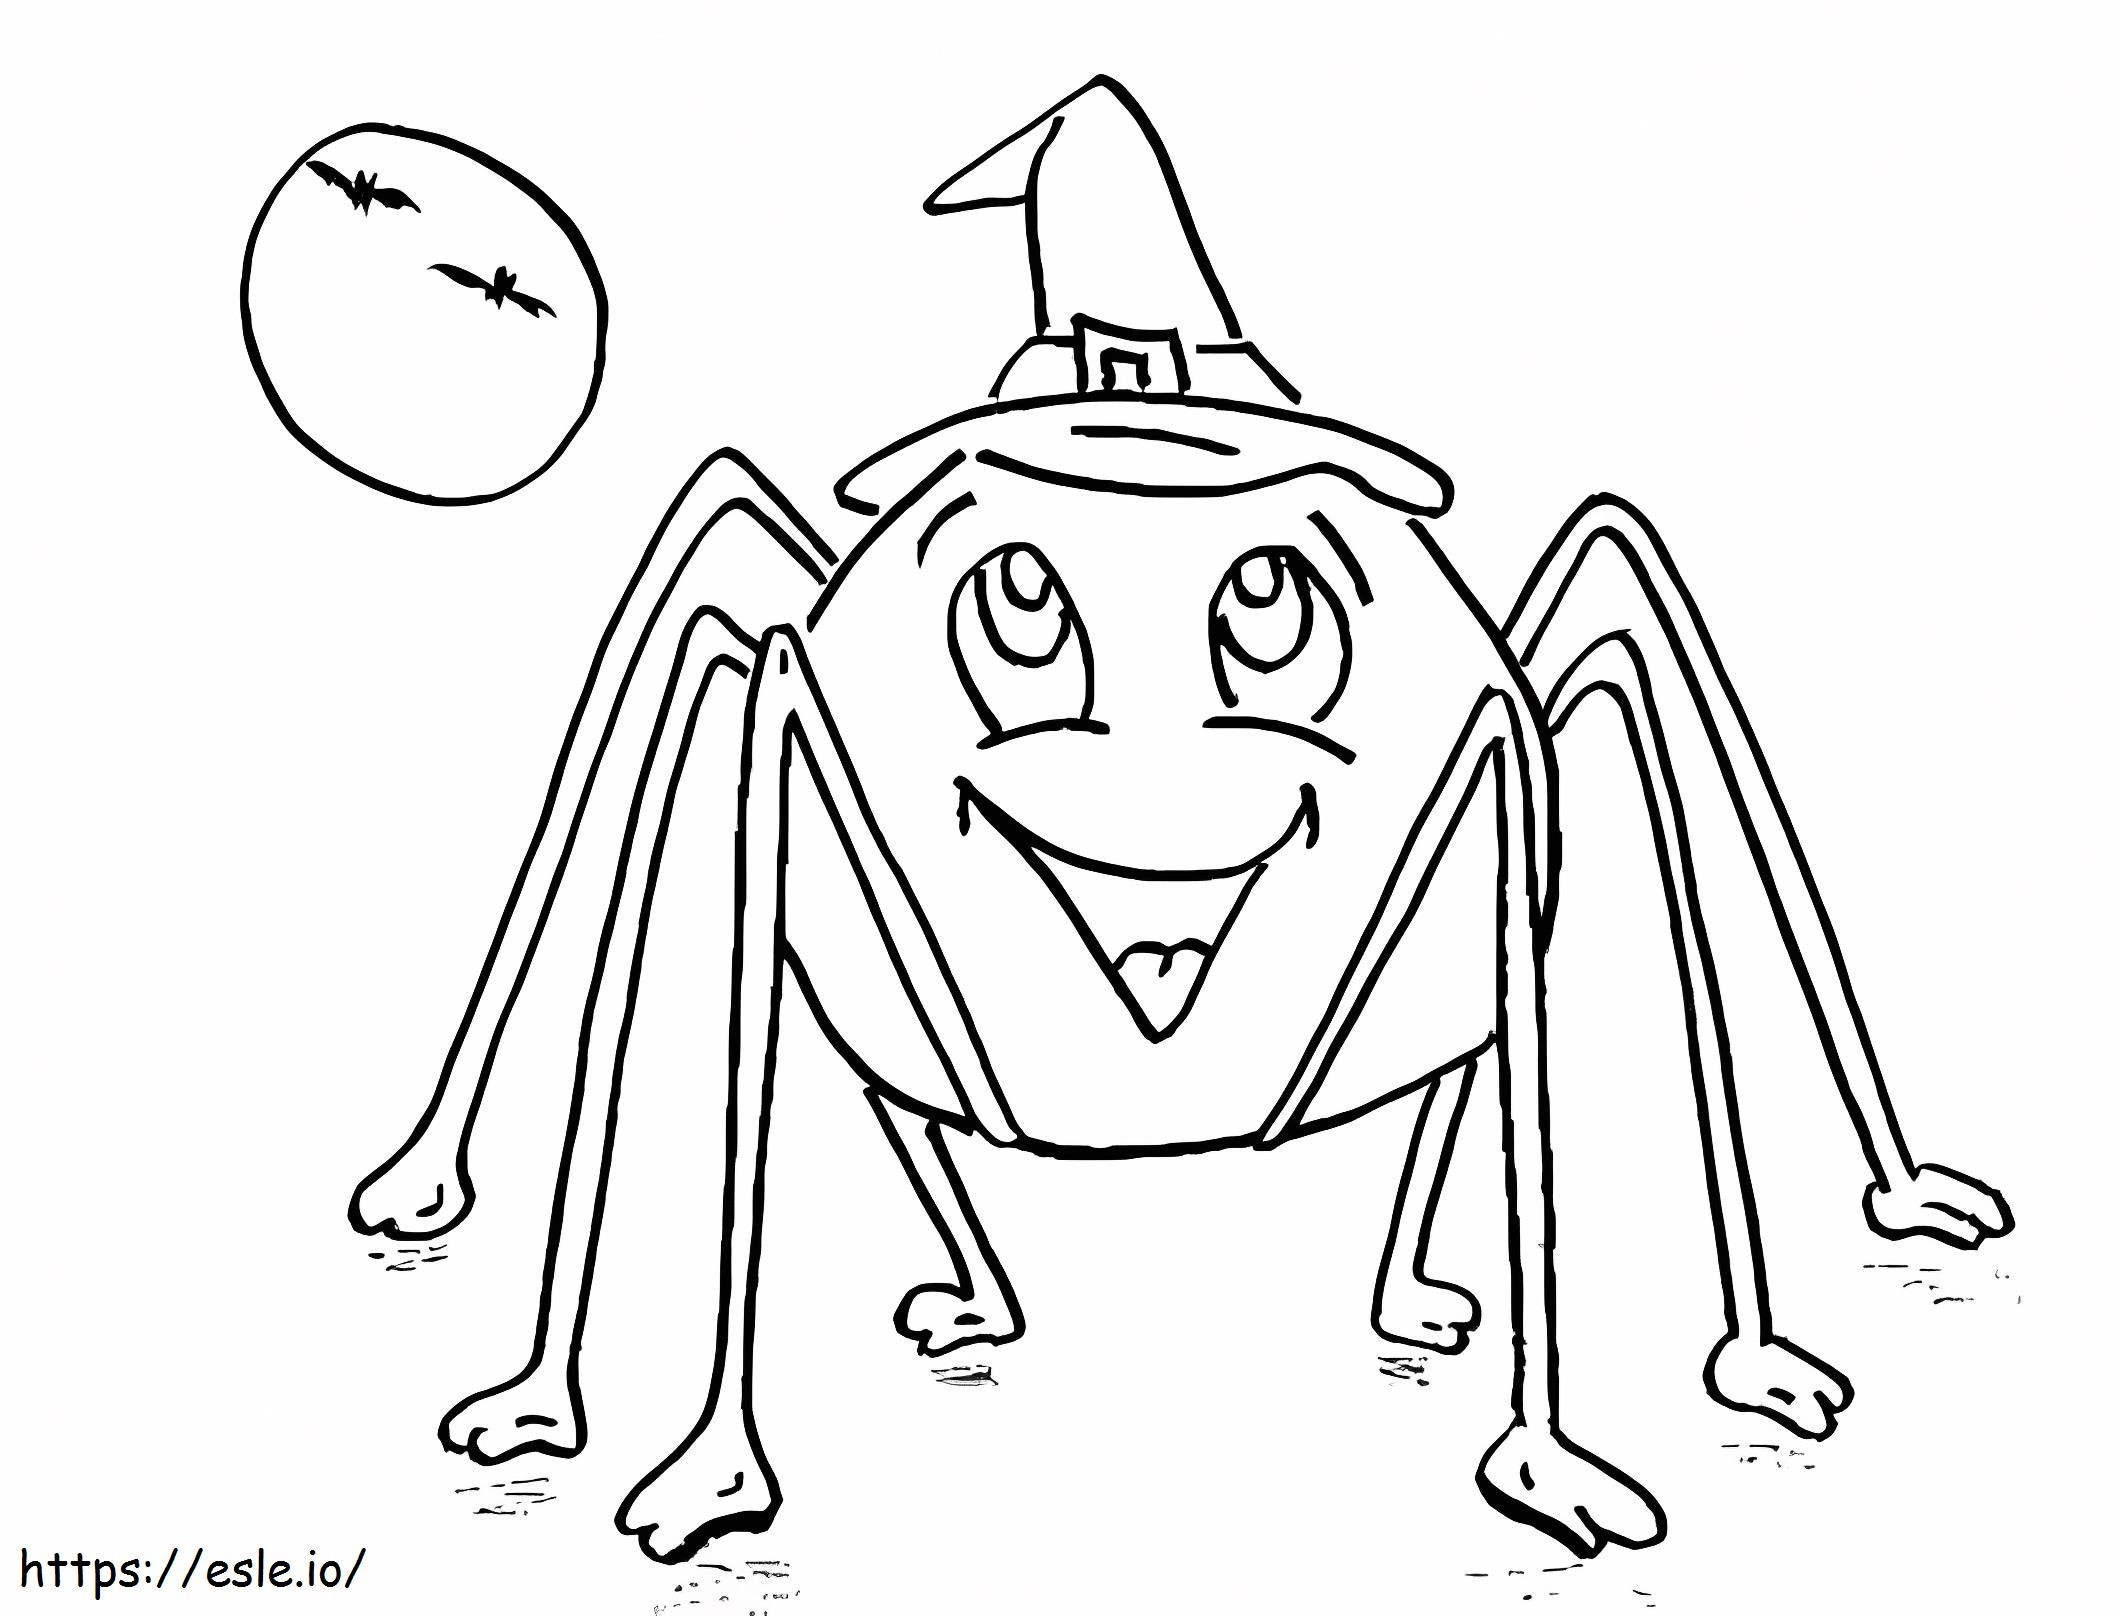 Halloween-Spinne ausmalbilder